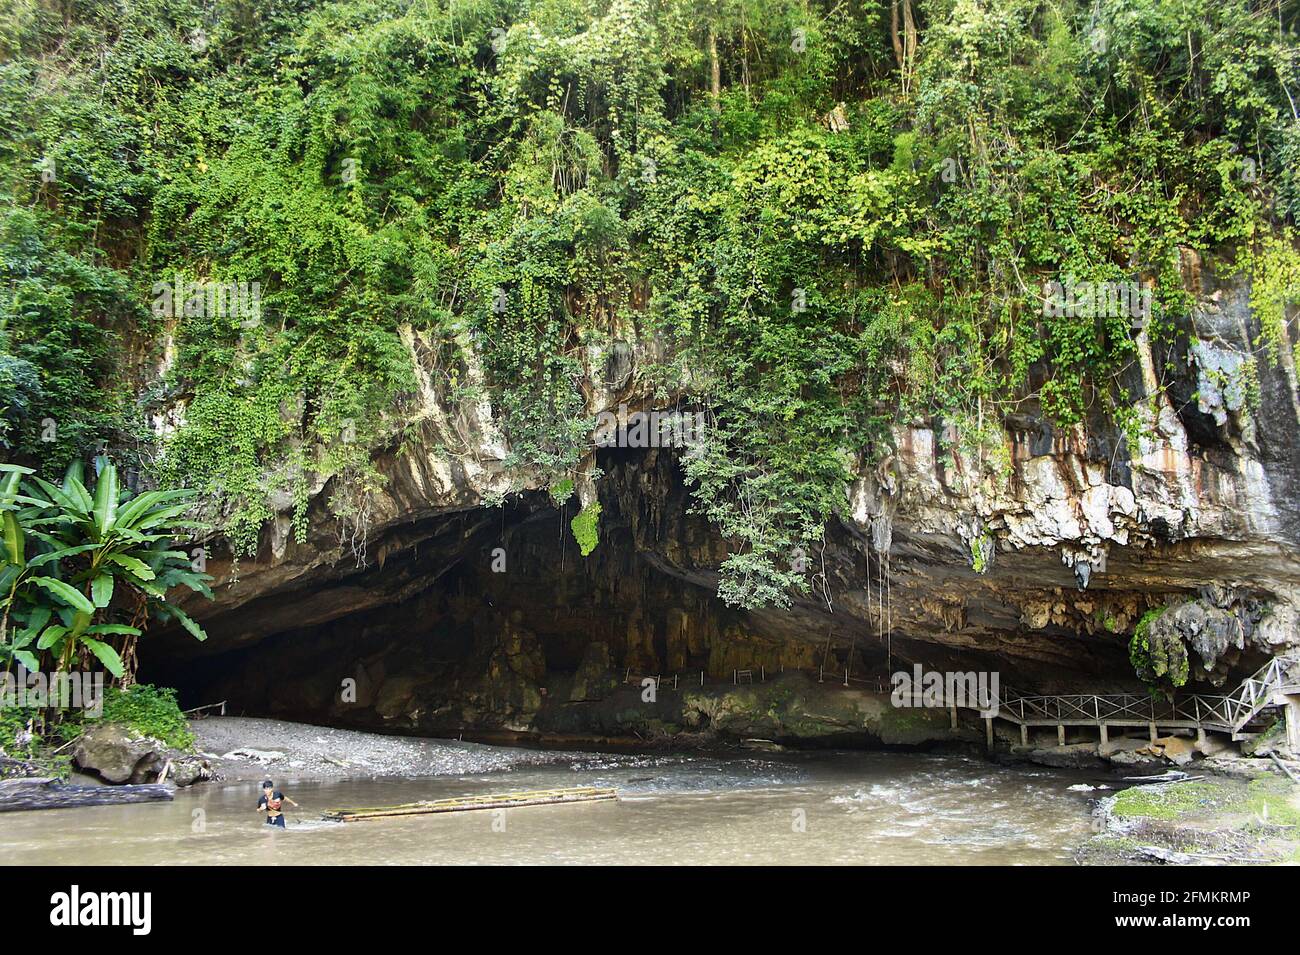 SOP pong, Thaïlande - octobre 19,2015: Grotte de Tham Lod près de SOP pong dans le district de Pang Mapha, province de Mae Hong son, dans le nord de la Thaïlande Banque D'Images